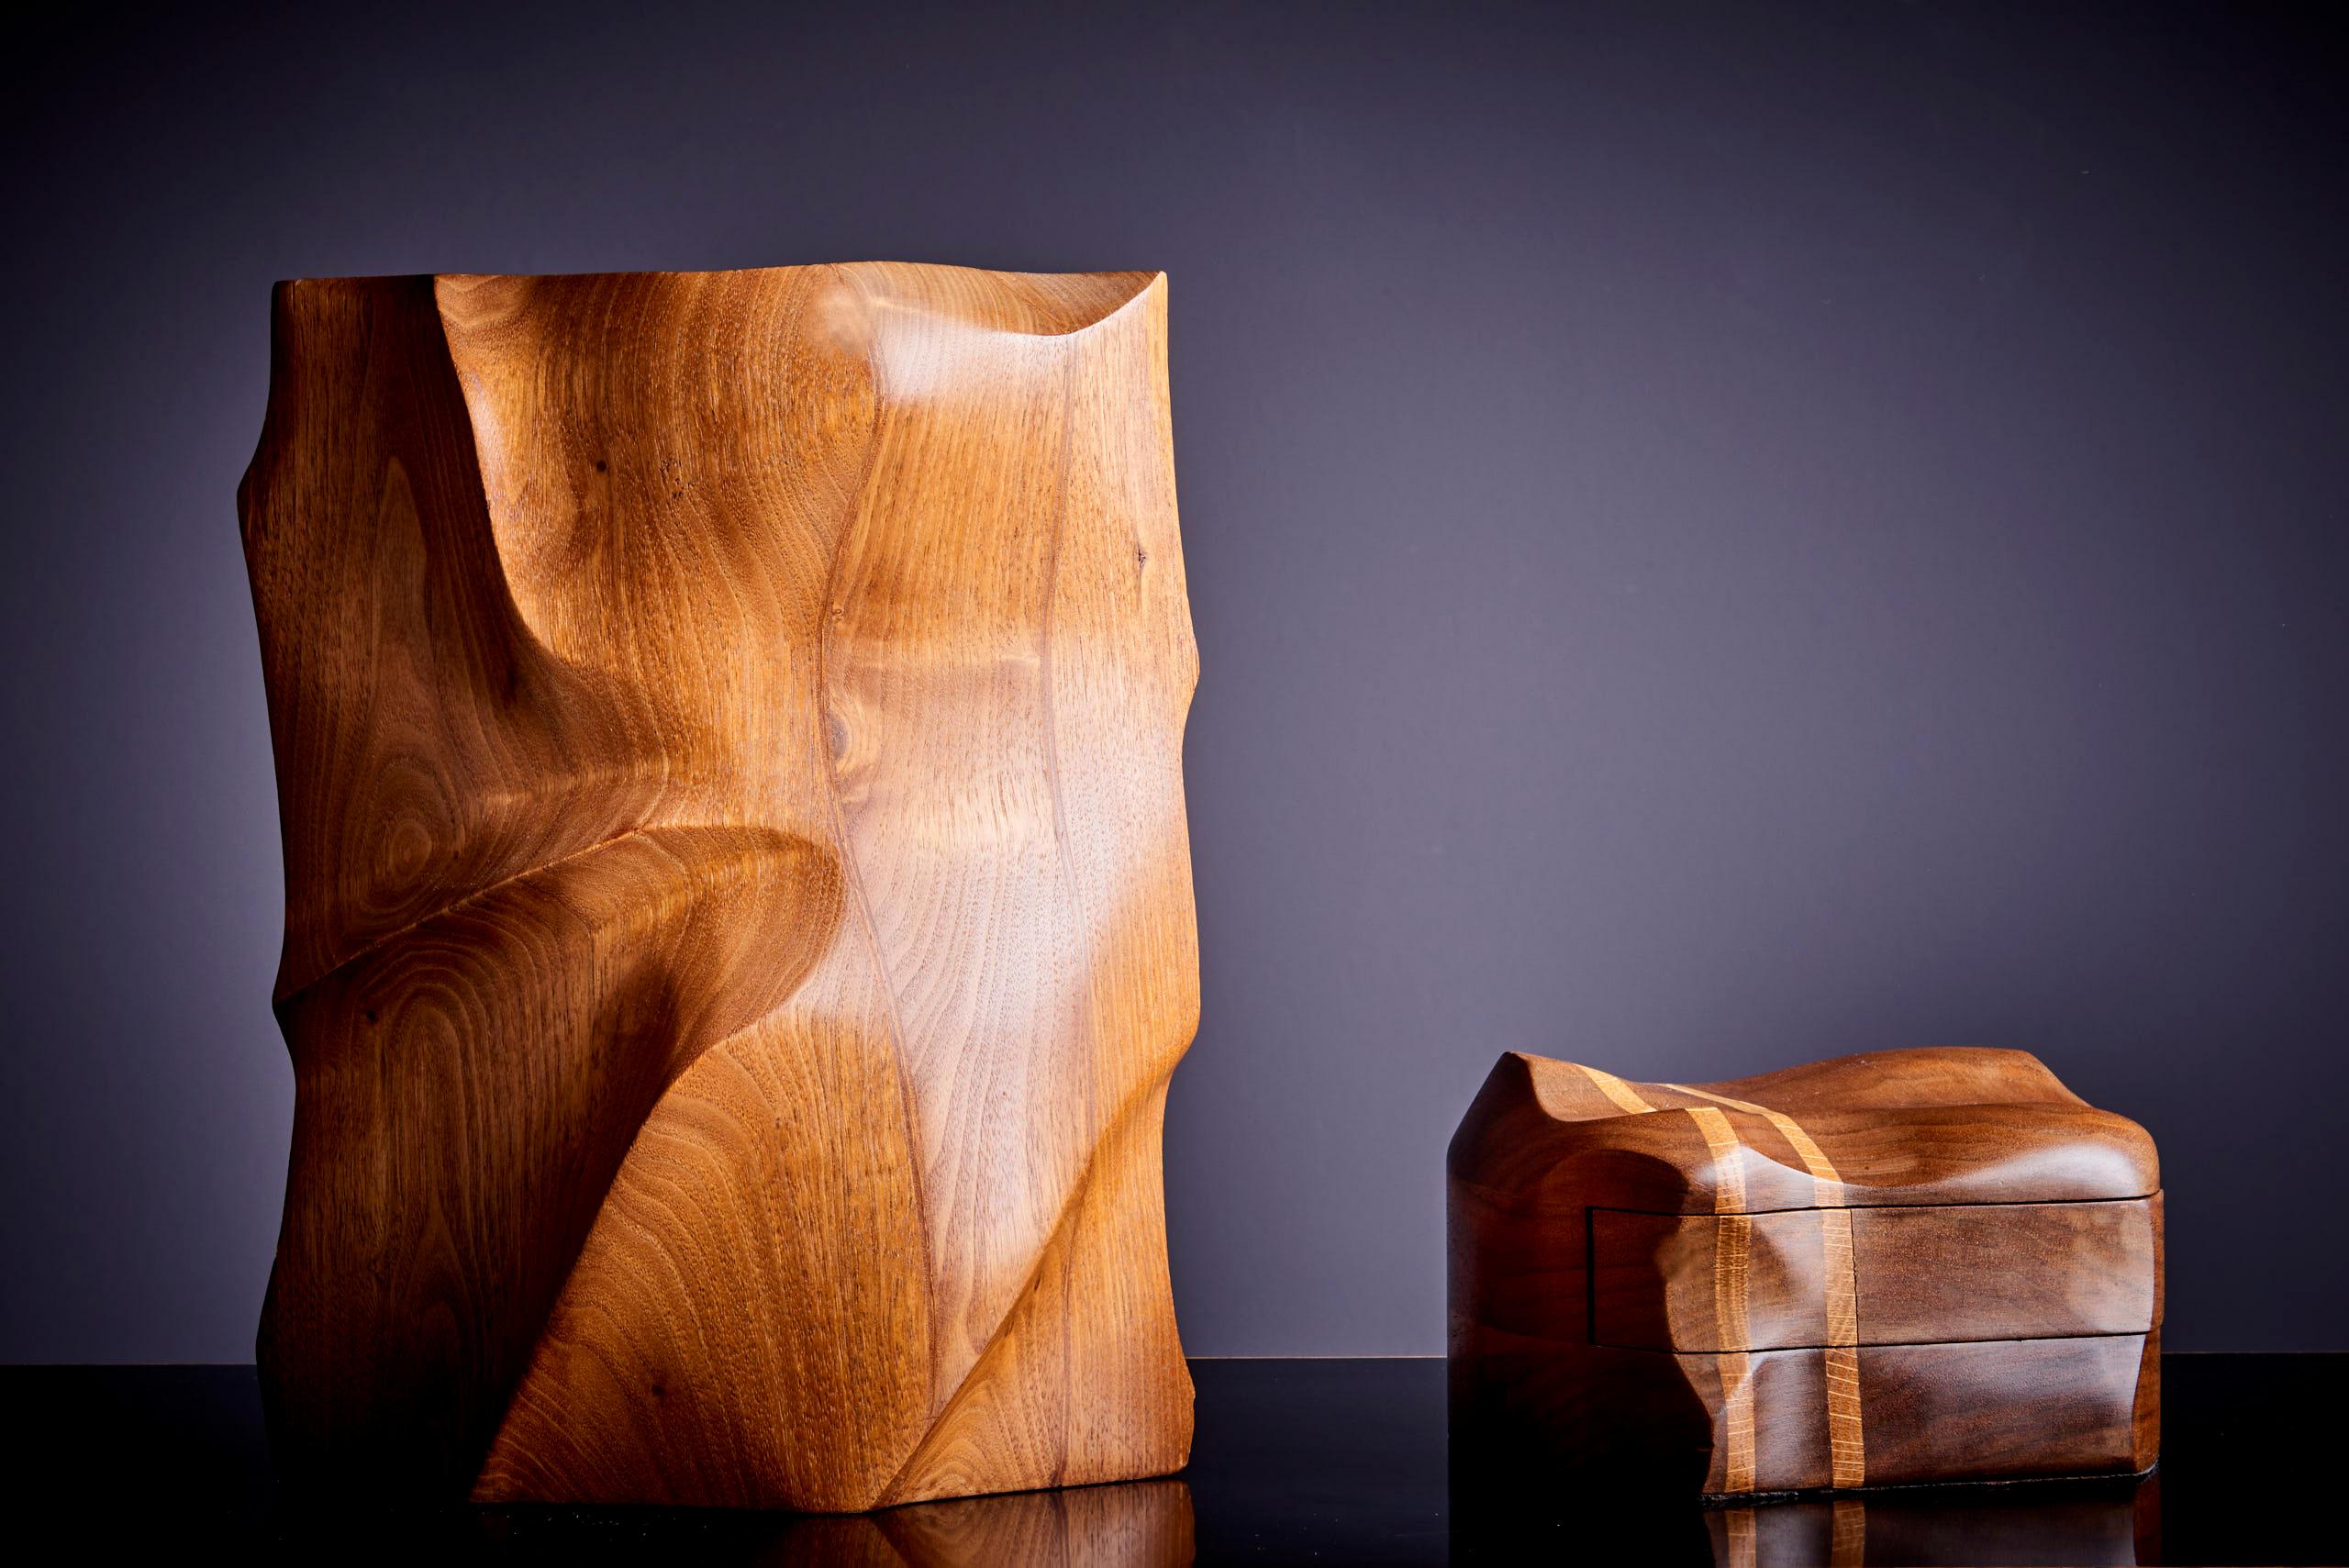 Einzigartiger Satz von zwei Charles Kaplan woodworker Studio Stücken.
Absolute High-End-Qualität. Vase ist markiert. Die angegebenen Maße beziehen sich auf die Vase.

